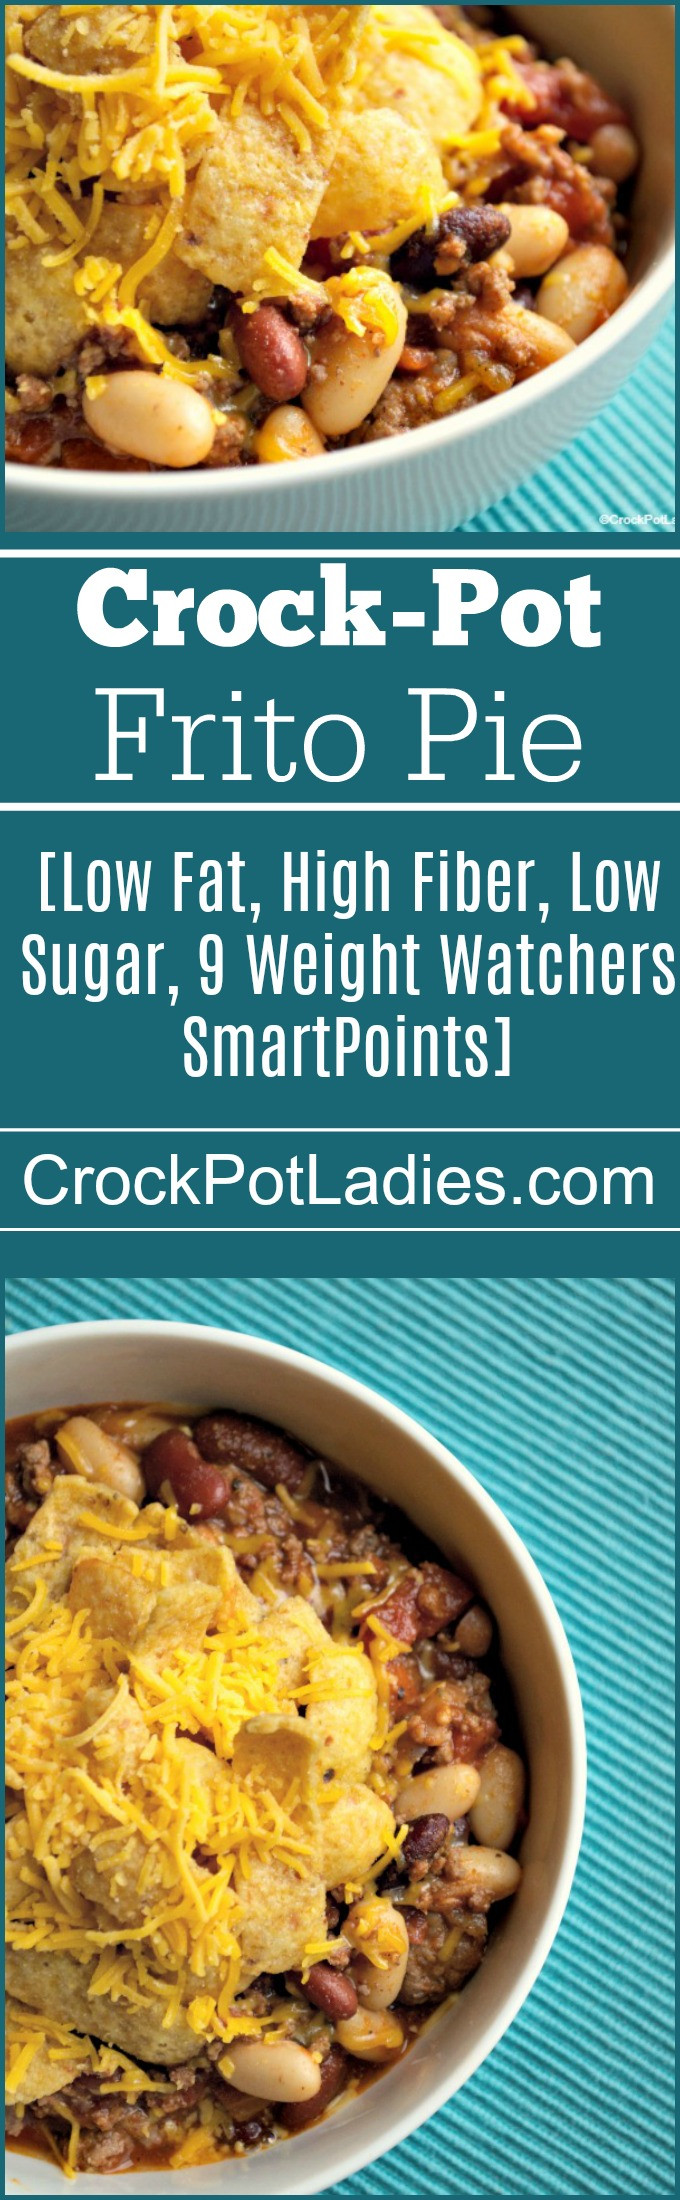 High Fiber Chicken Recipes
 High Fiber Crock Pot Recipes Crock Pot La s